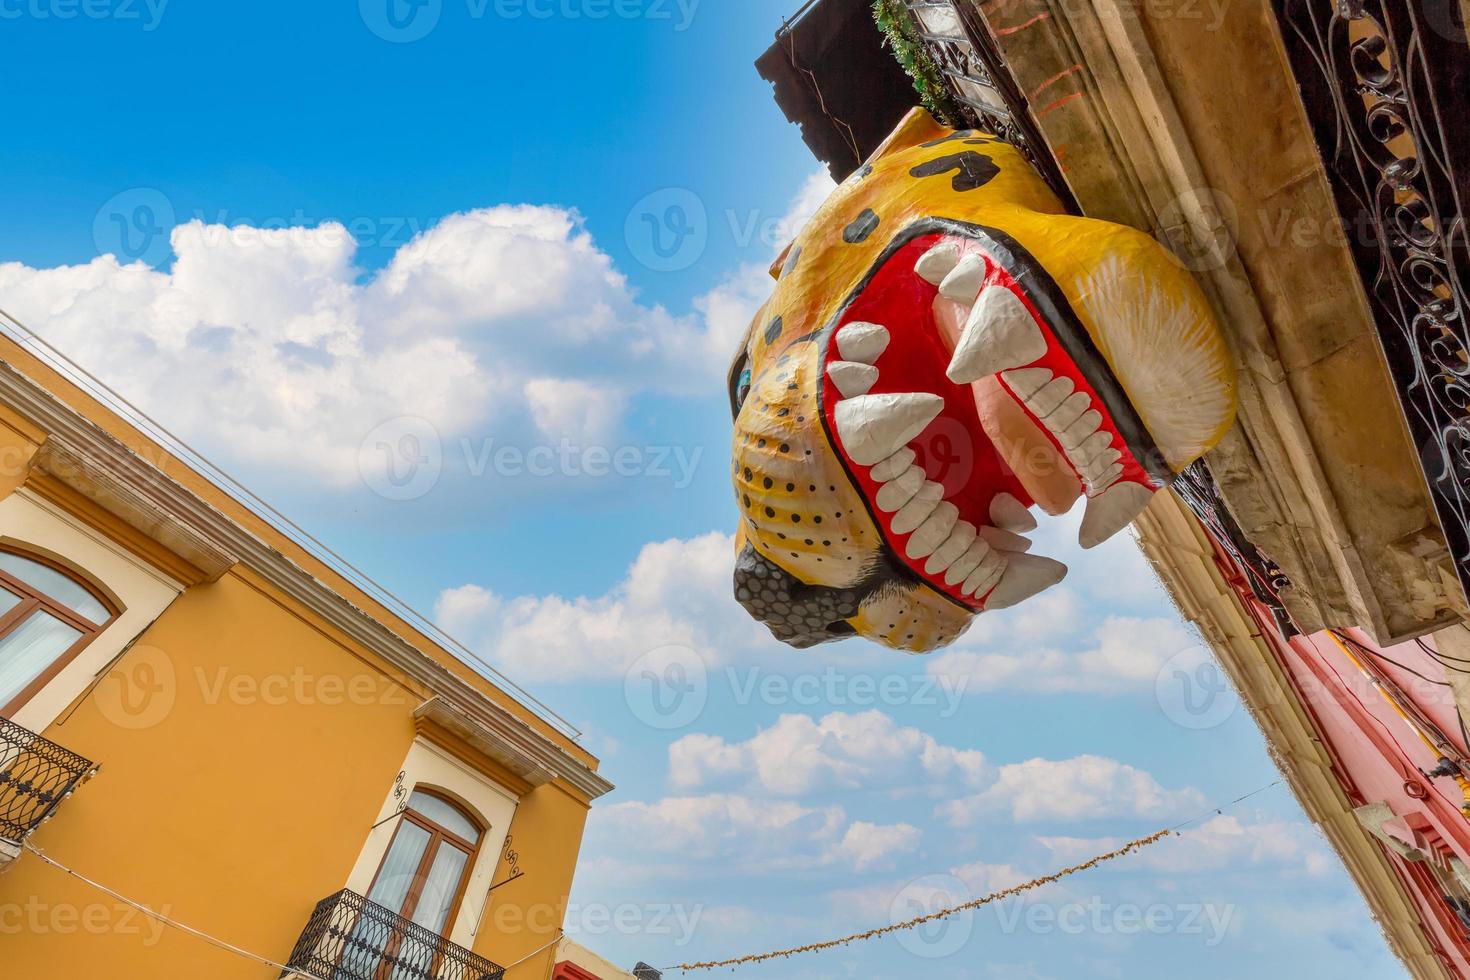 oaxaca, mexique, rues pittoresques de la vieille ville et bâtiments coloniaux colorés dans le centre-ville historique photo